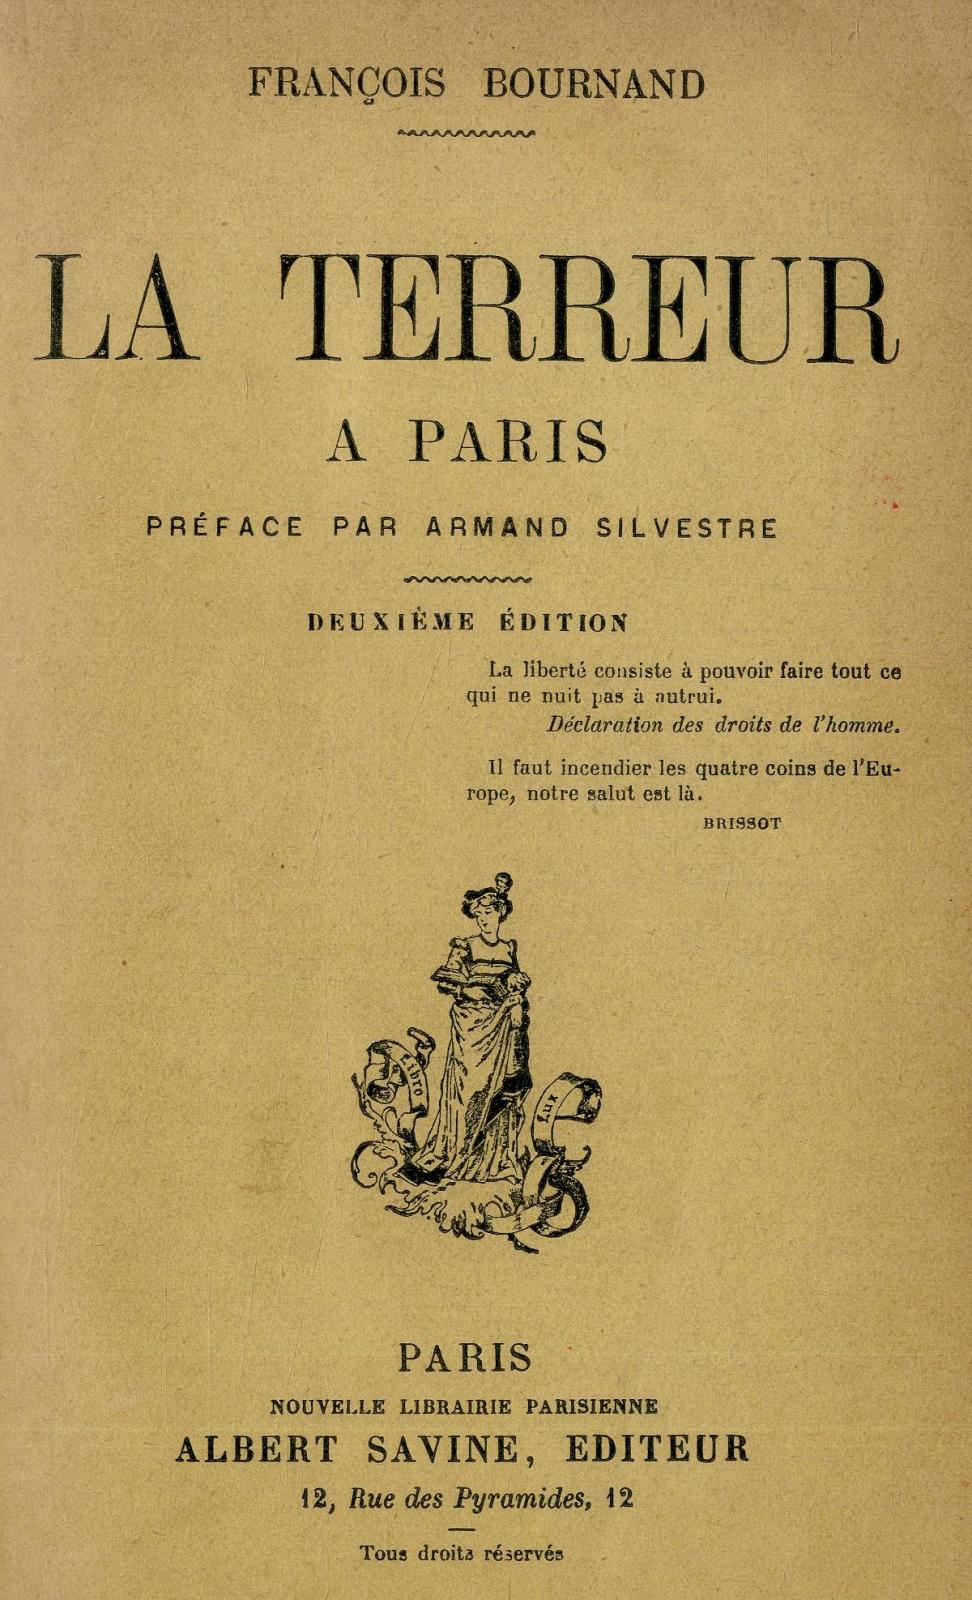 La terreur à Paris / François Bournand / préface par Armand Silvestre